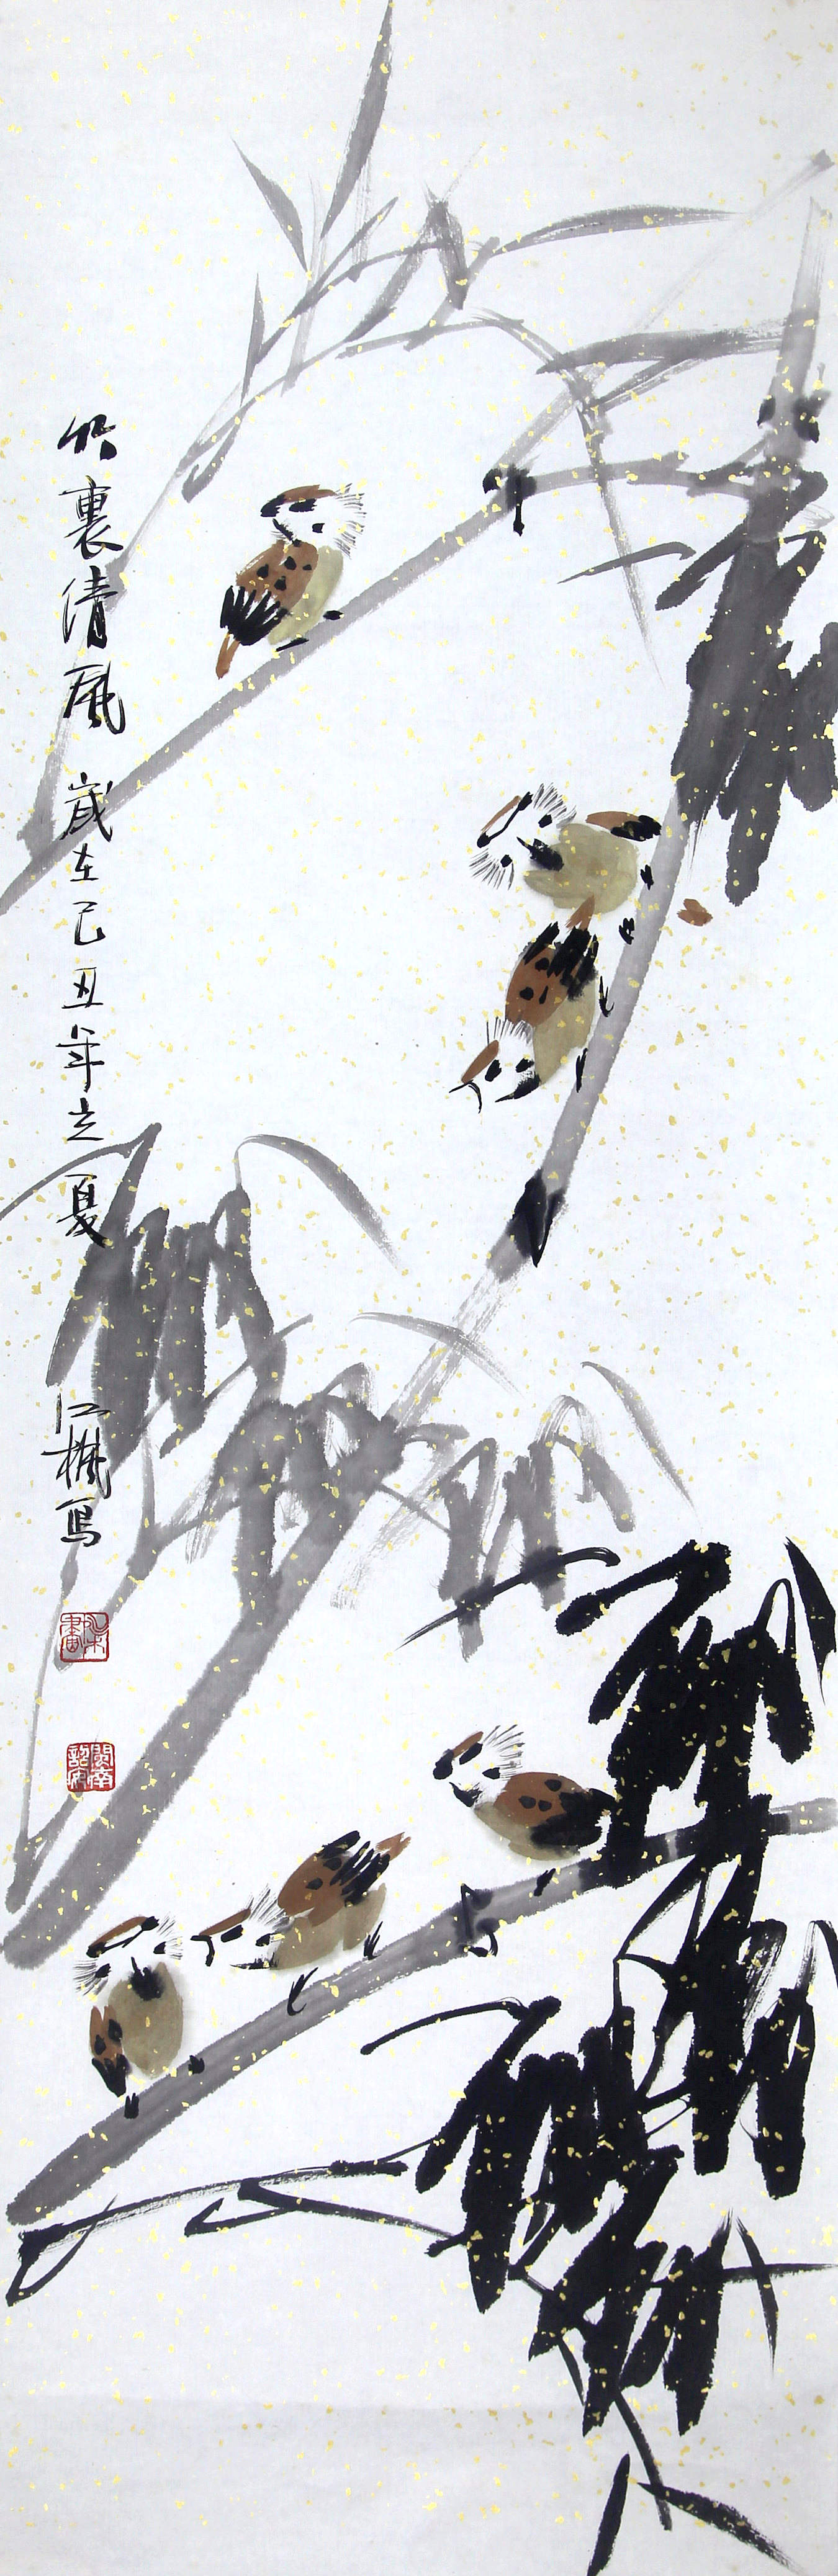 《竹里春风》写意花鸟·墨竹 纸本水墨淡设色 2009年